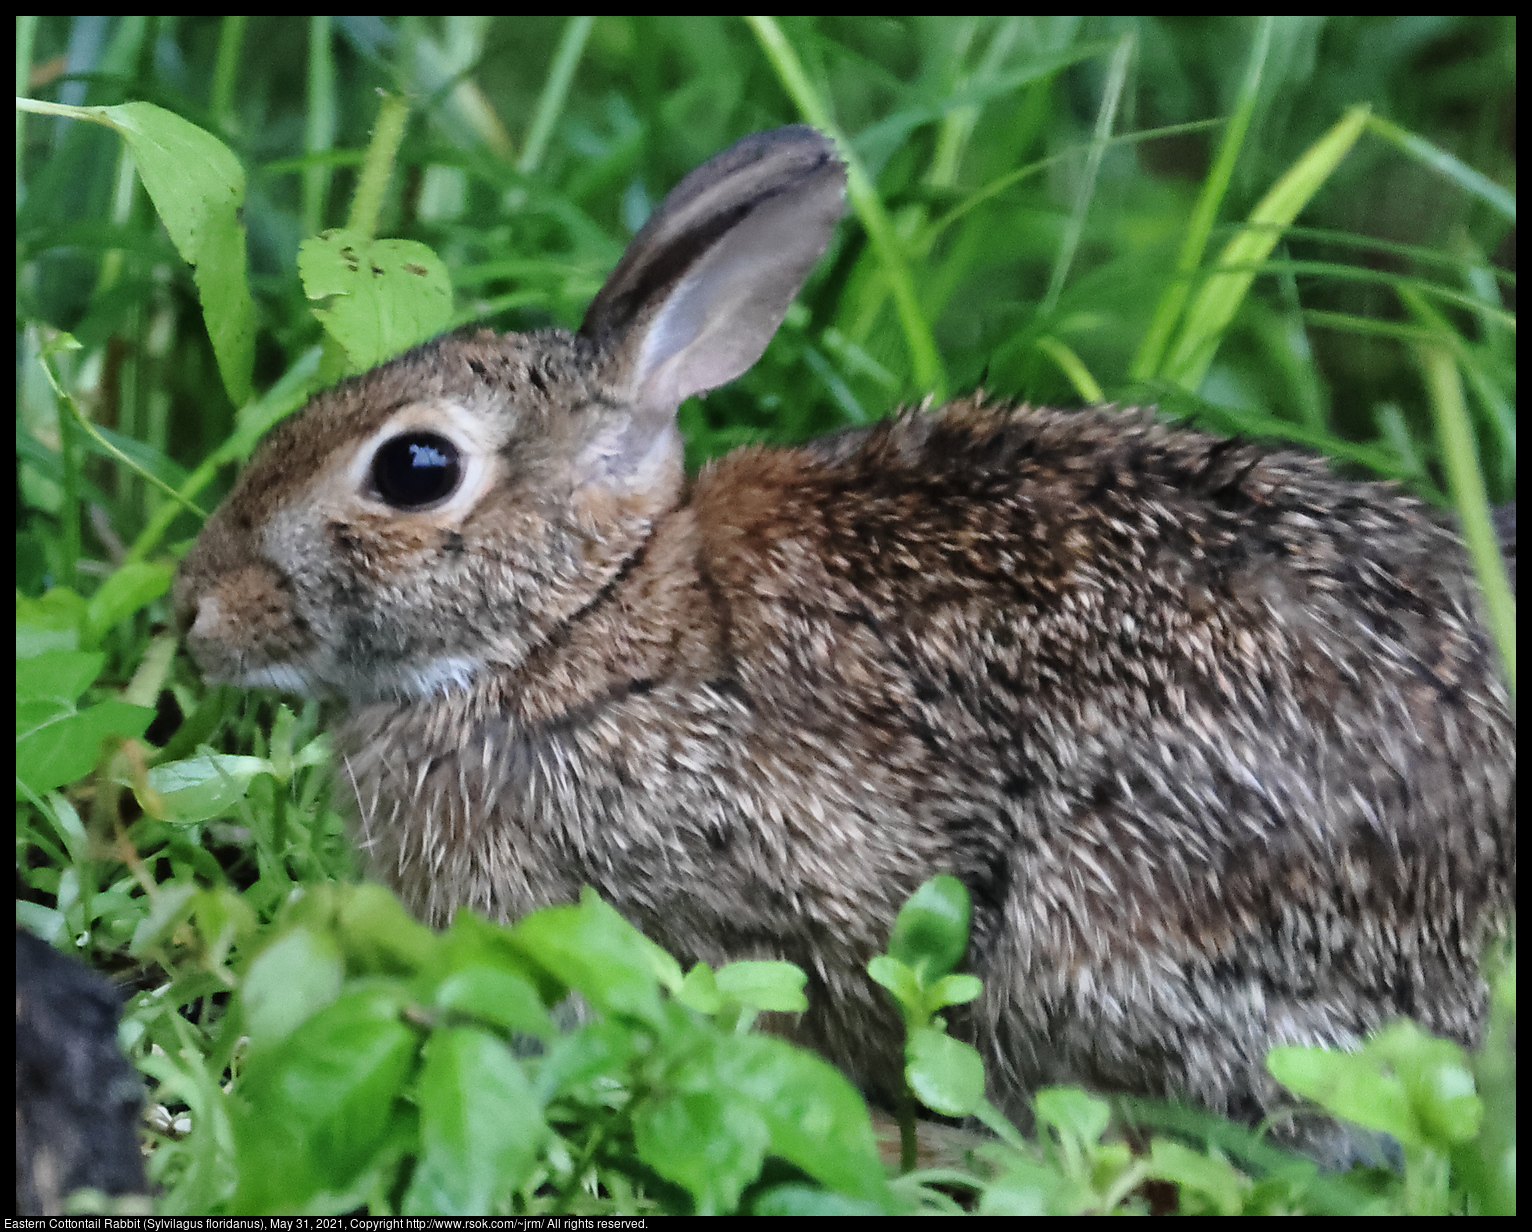 Eastern Cottontail Rabbit (Sylvilagus floridanus), May 31, 2021